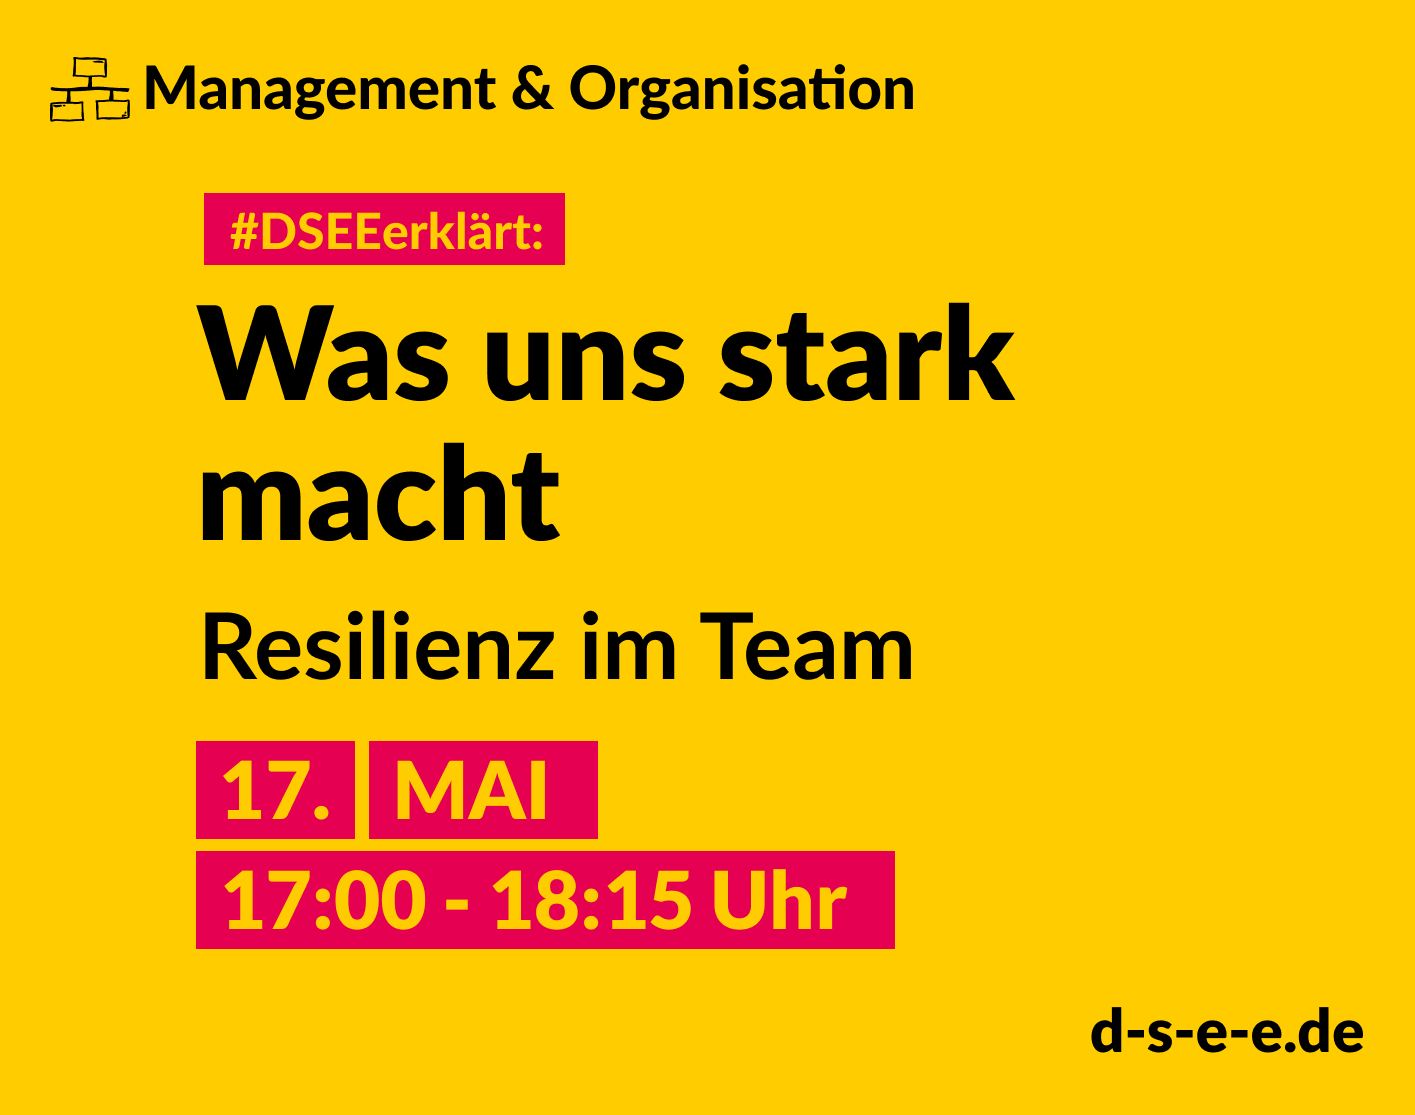 Management & Organisation; #DSEEerklärt: Was uns stark macht, macht uns besser – Resilienz im Team, 17. Mai, 17:00-18:15 Uhr